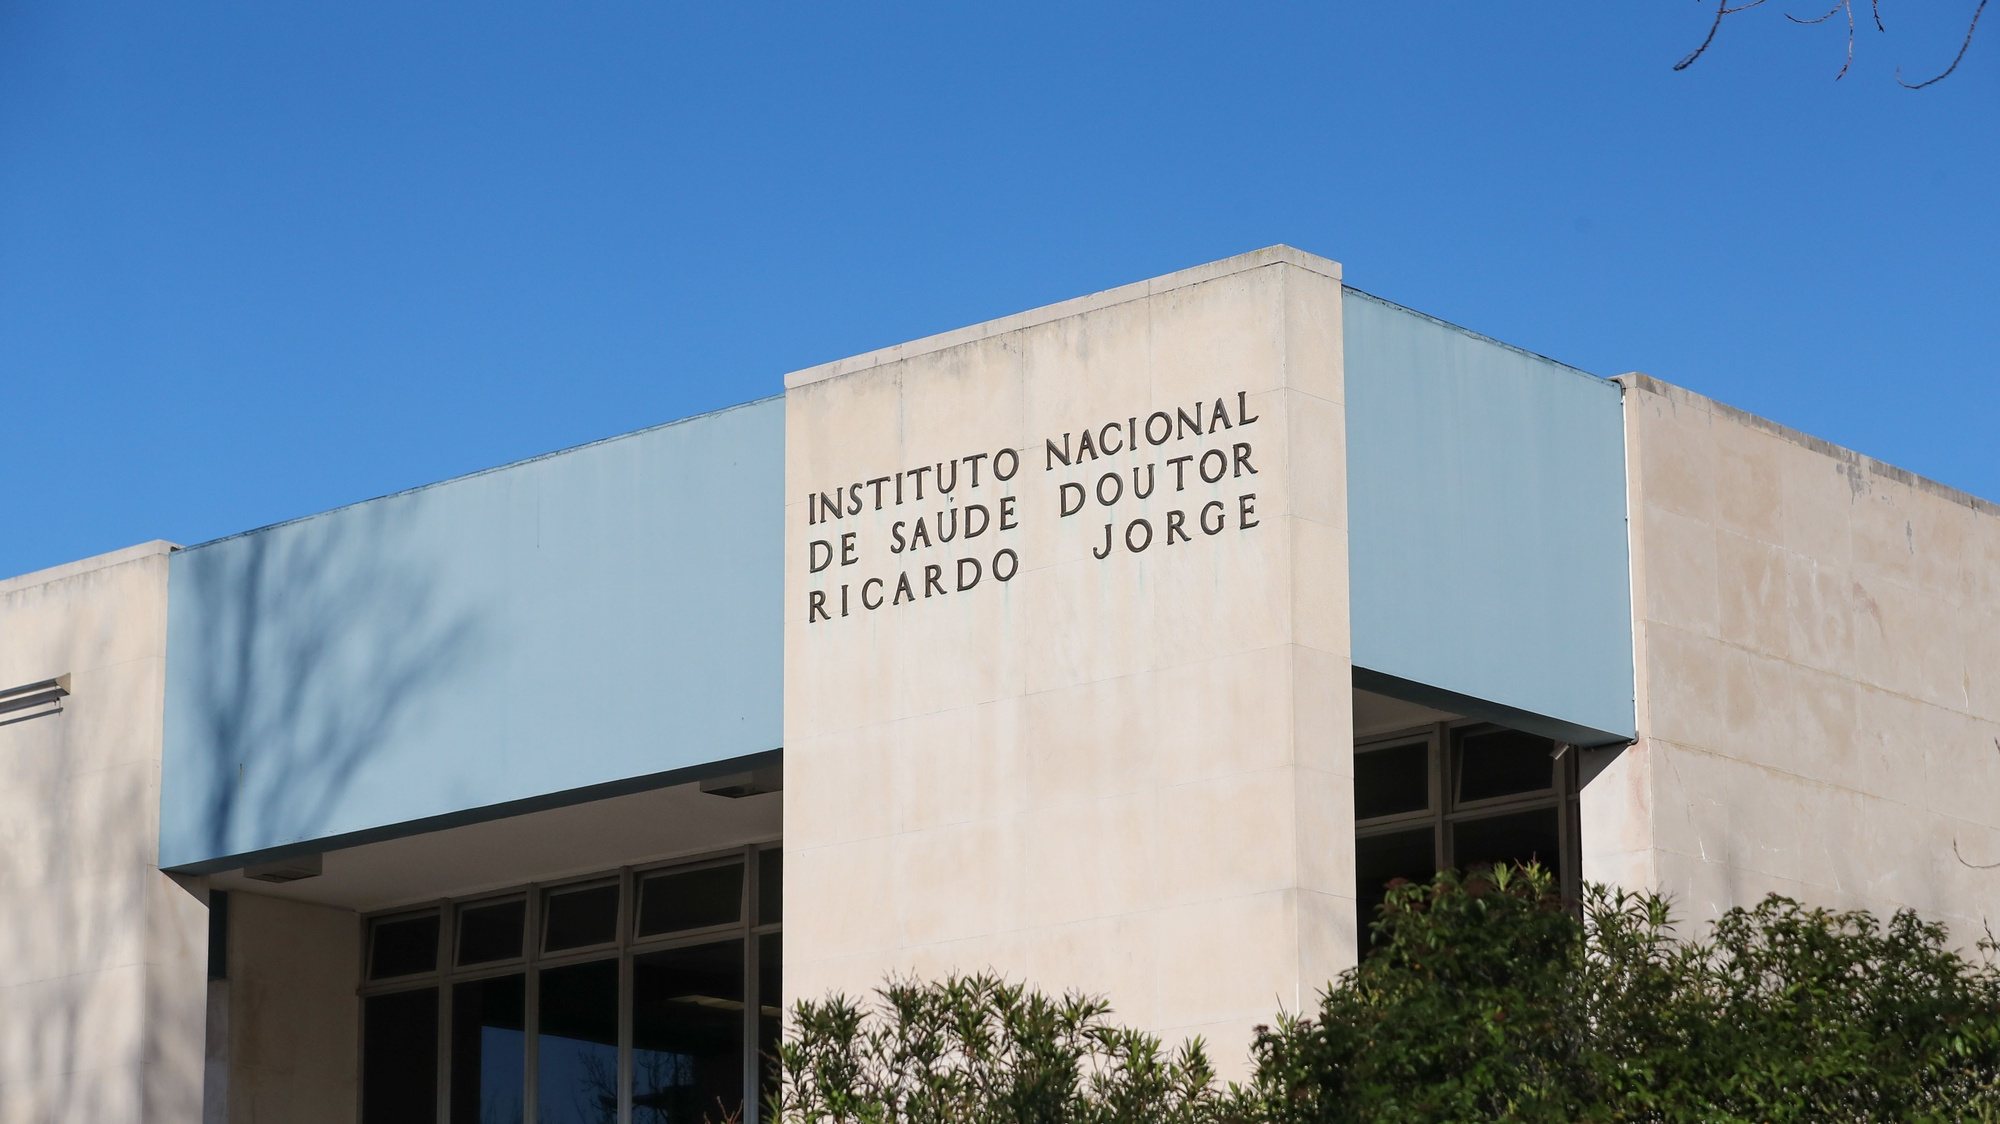 Instituto Nacional de Saúde Doutor Ricardo Jorge